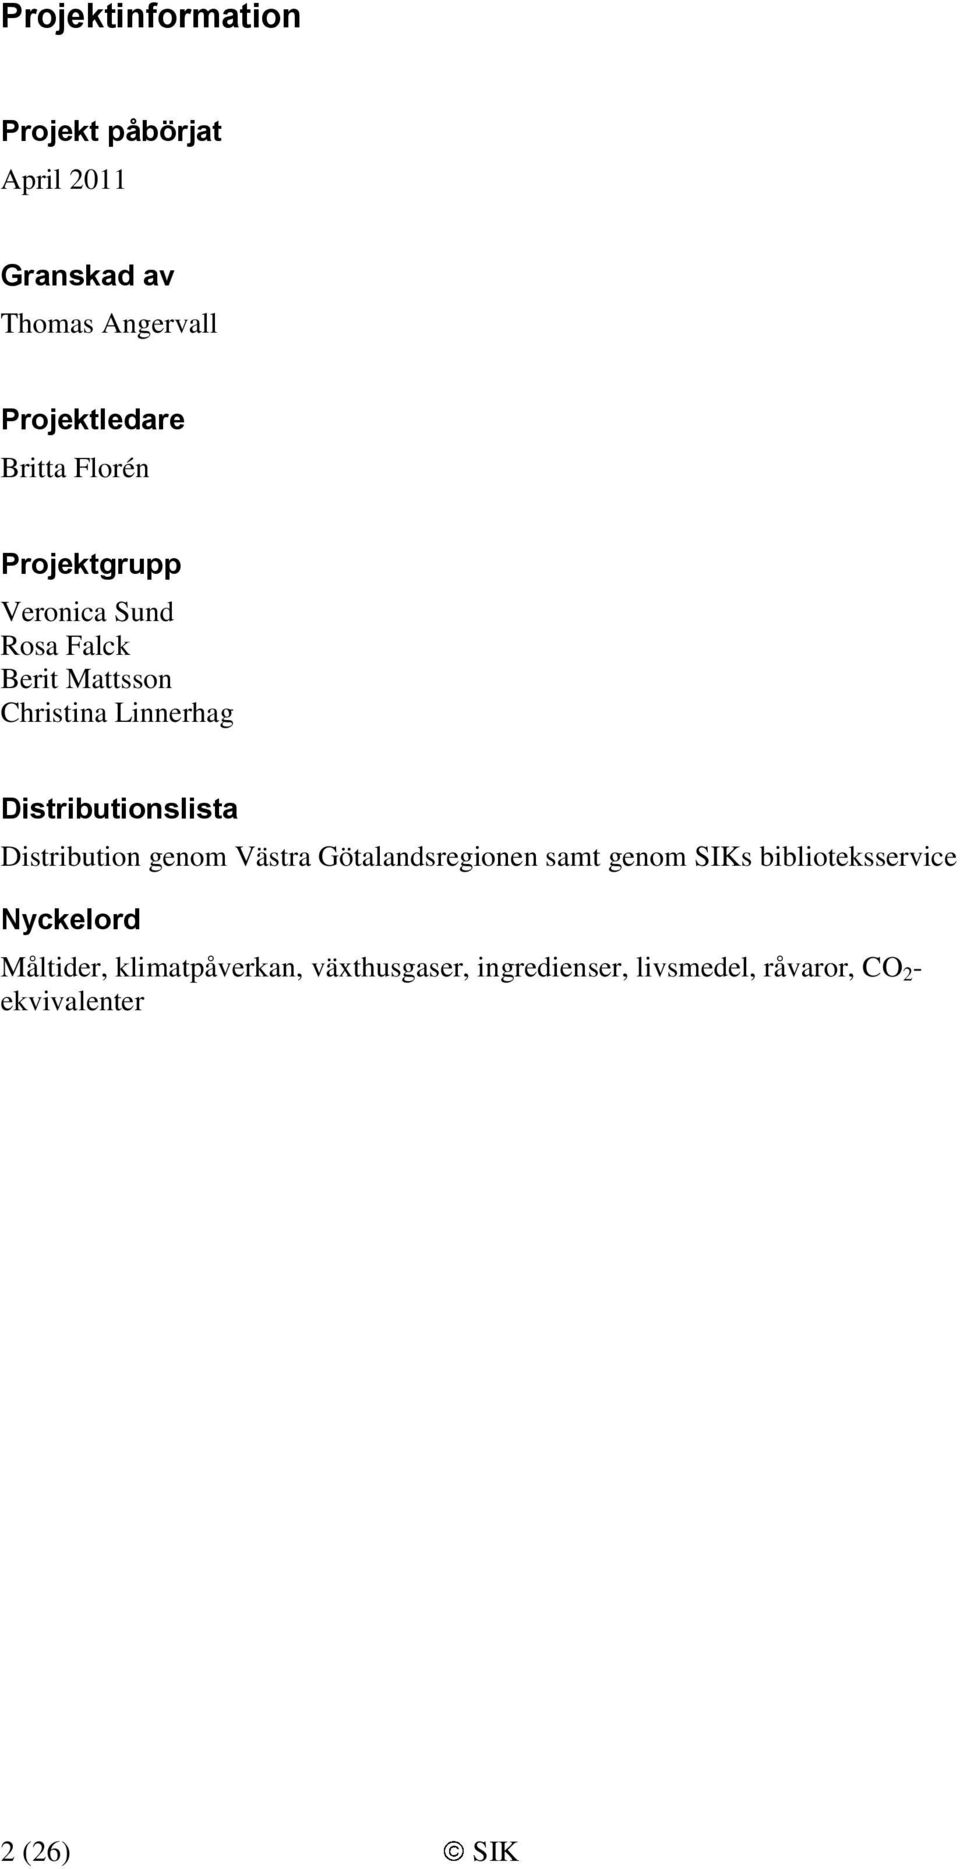 Distributionslista Distribution genom Västra Götalandsregionen samt genom SIKs